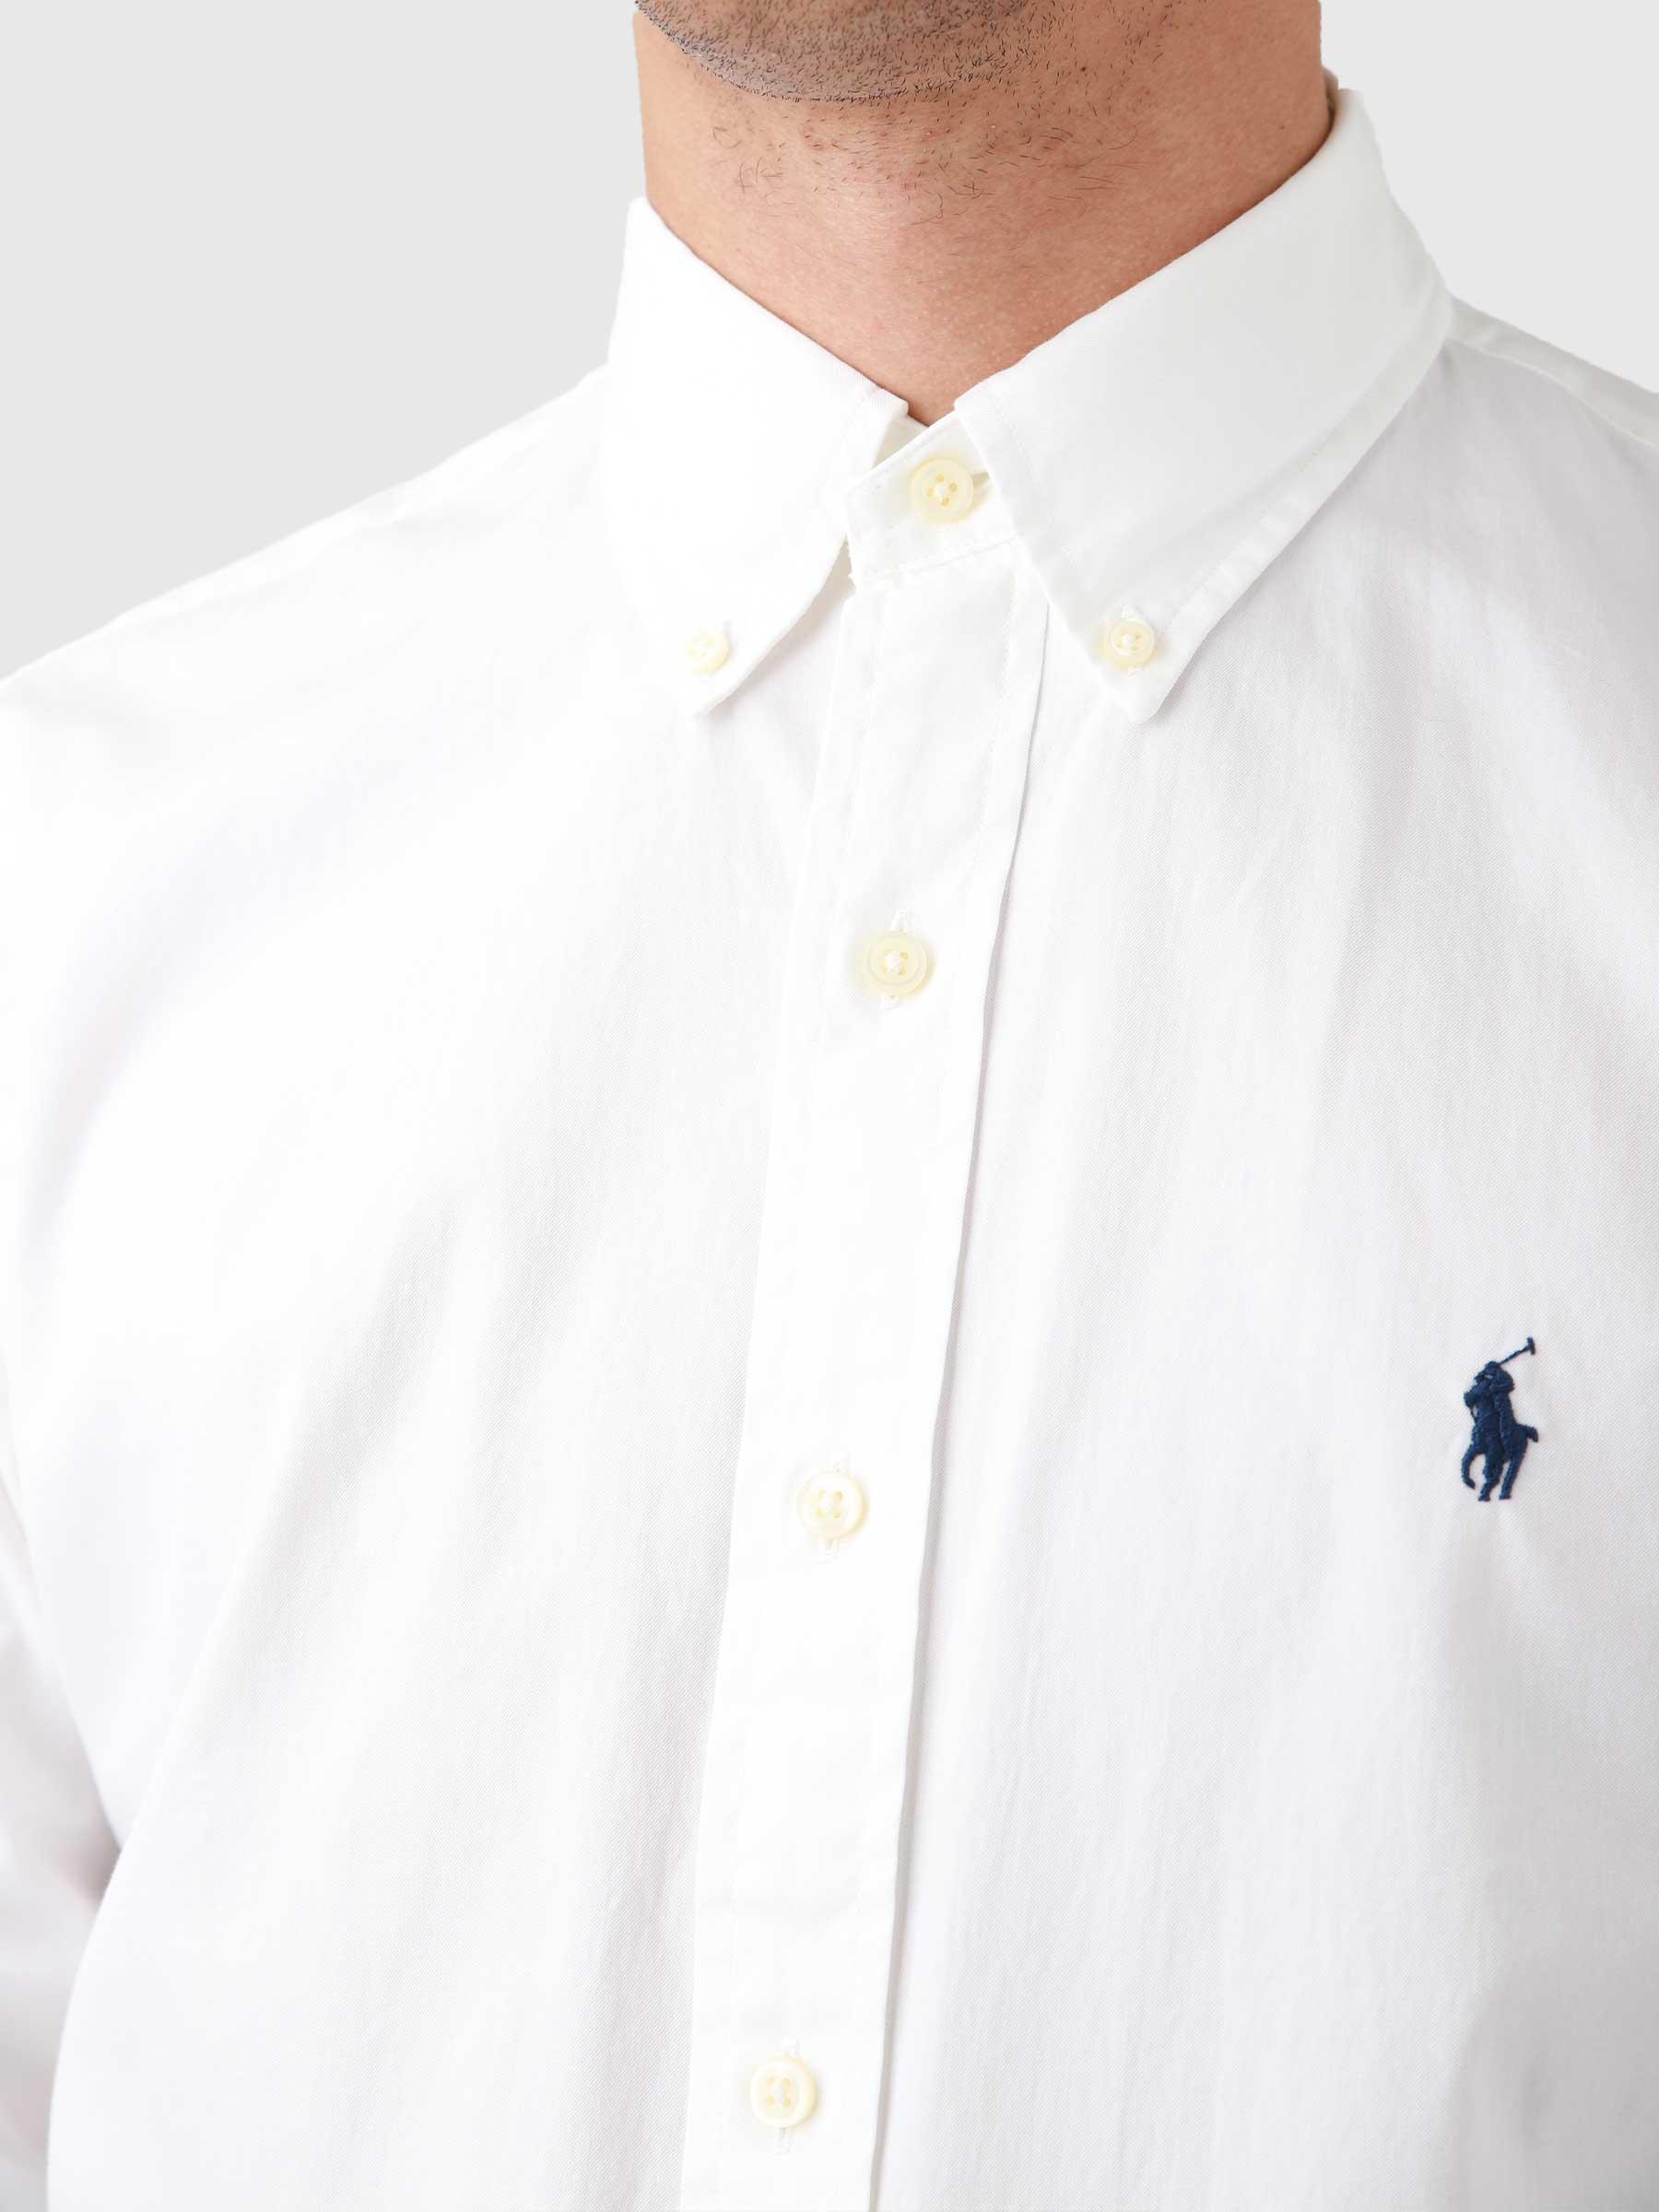 Polo Ralph Lauren Sport Shirt White - Freshcotton